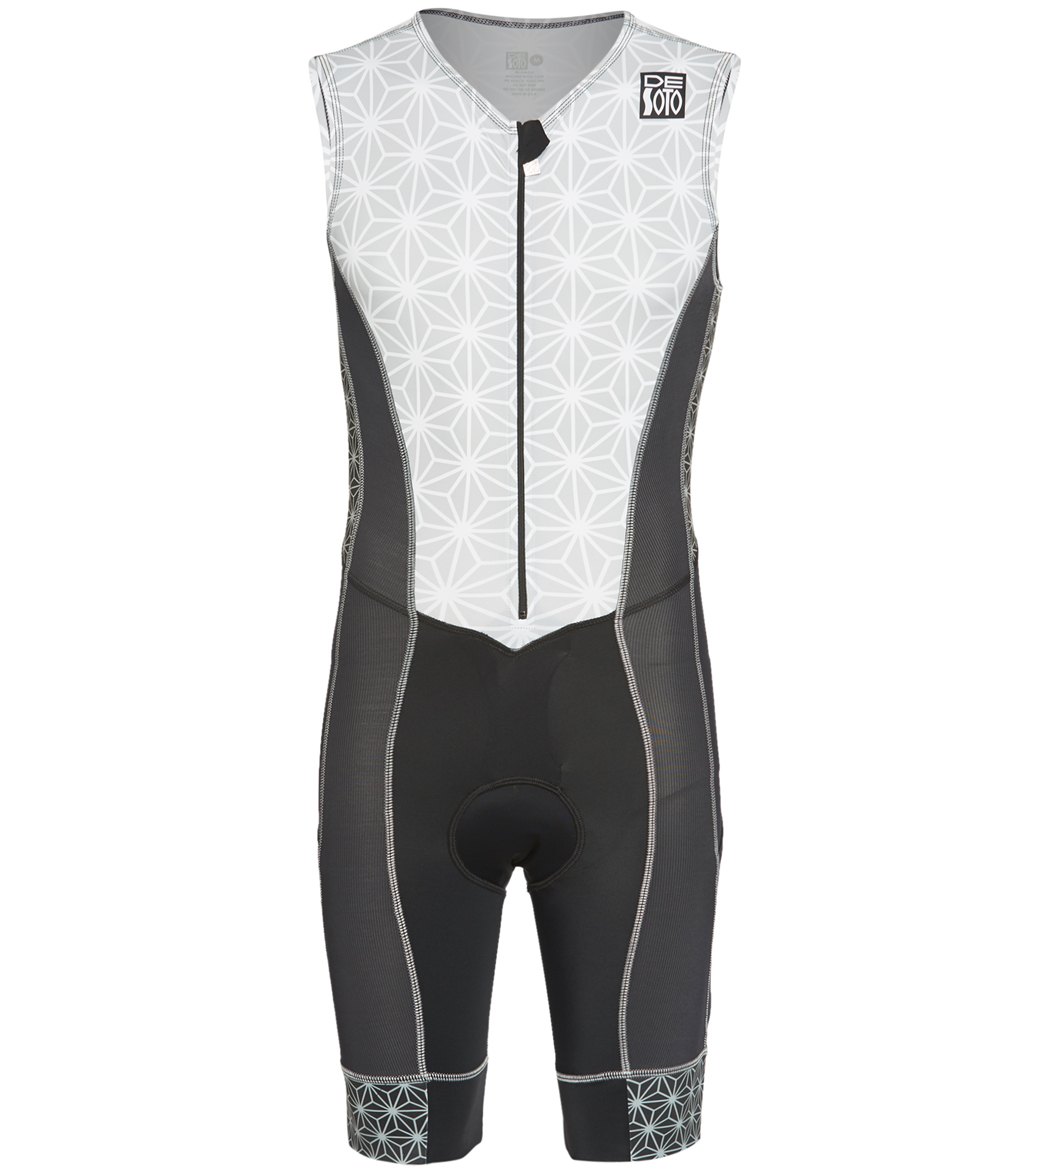 Desoto Men's Forza Tri Suit - Graphite Sparkle Large - Swimoutlet.com